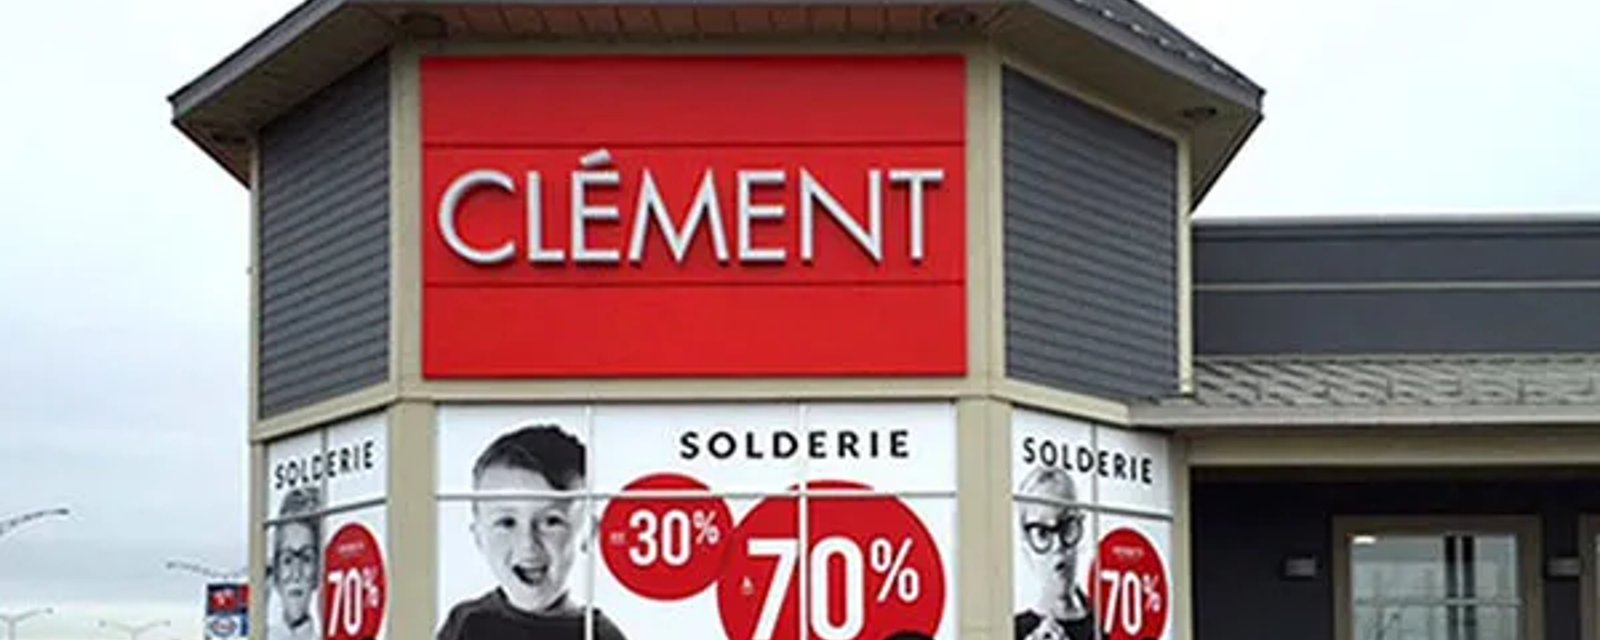 Excellente nouvelle pour les parents qui aiment magasiner chez Clément